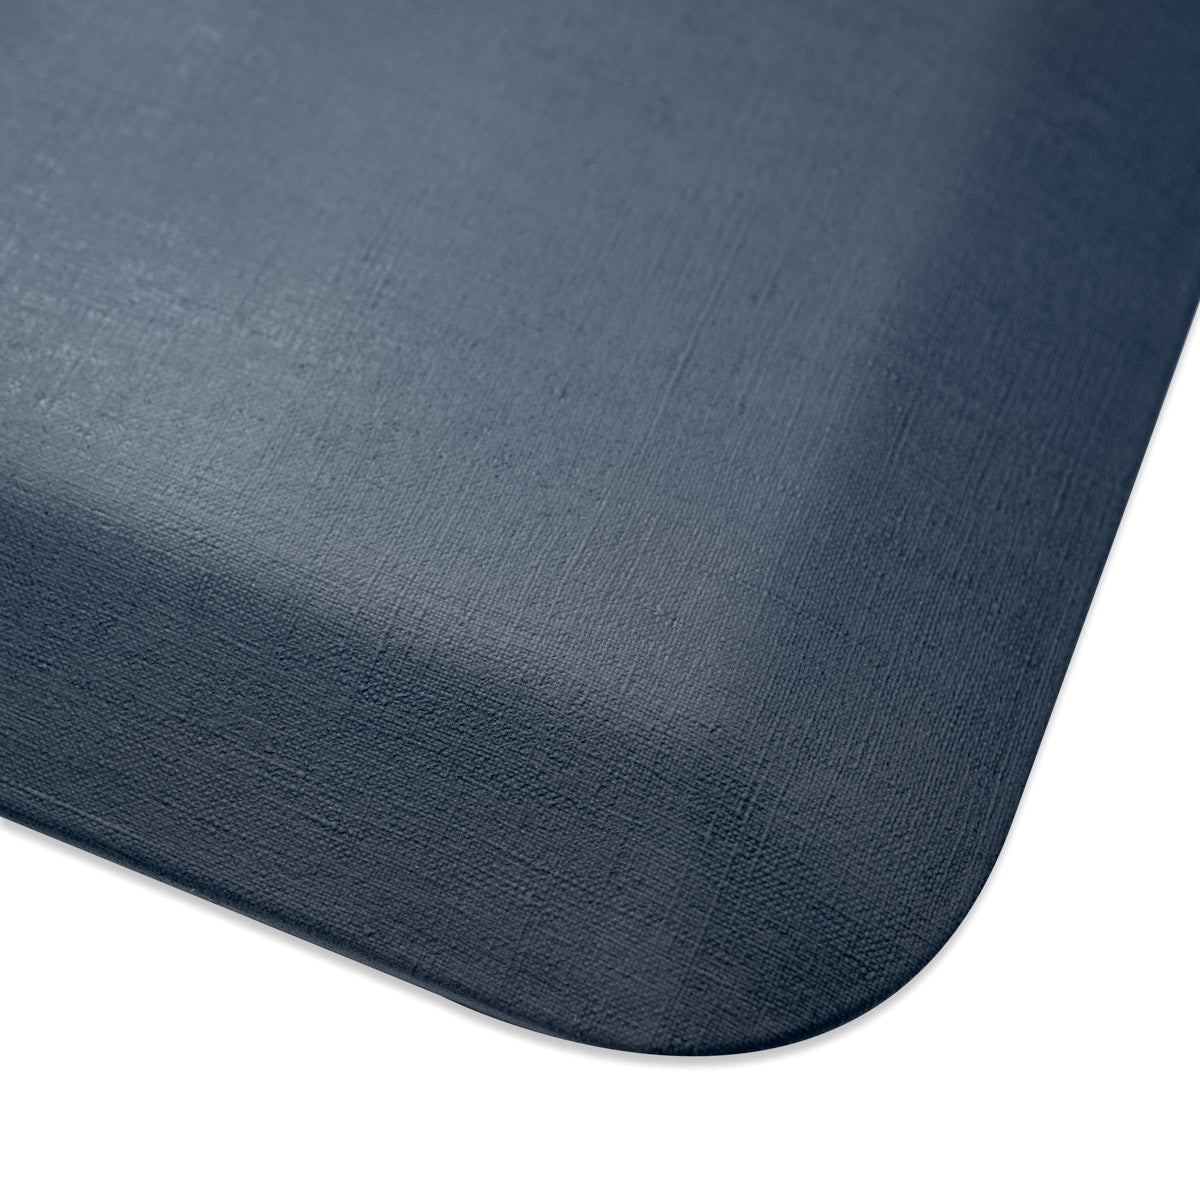 GORILLA GRIP Original Premium Anti-Fatigue Comfort Mat